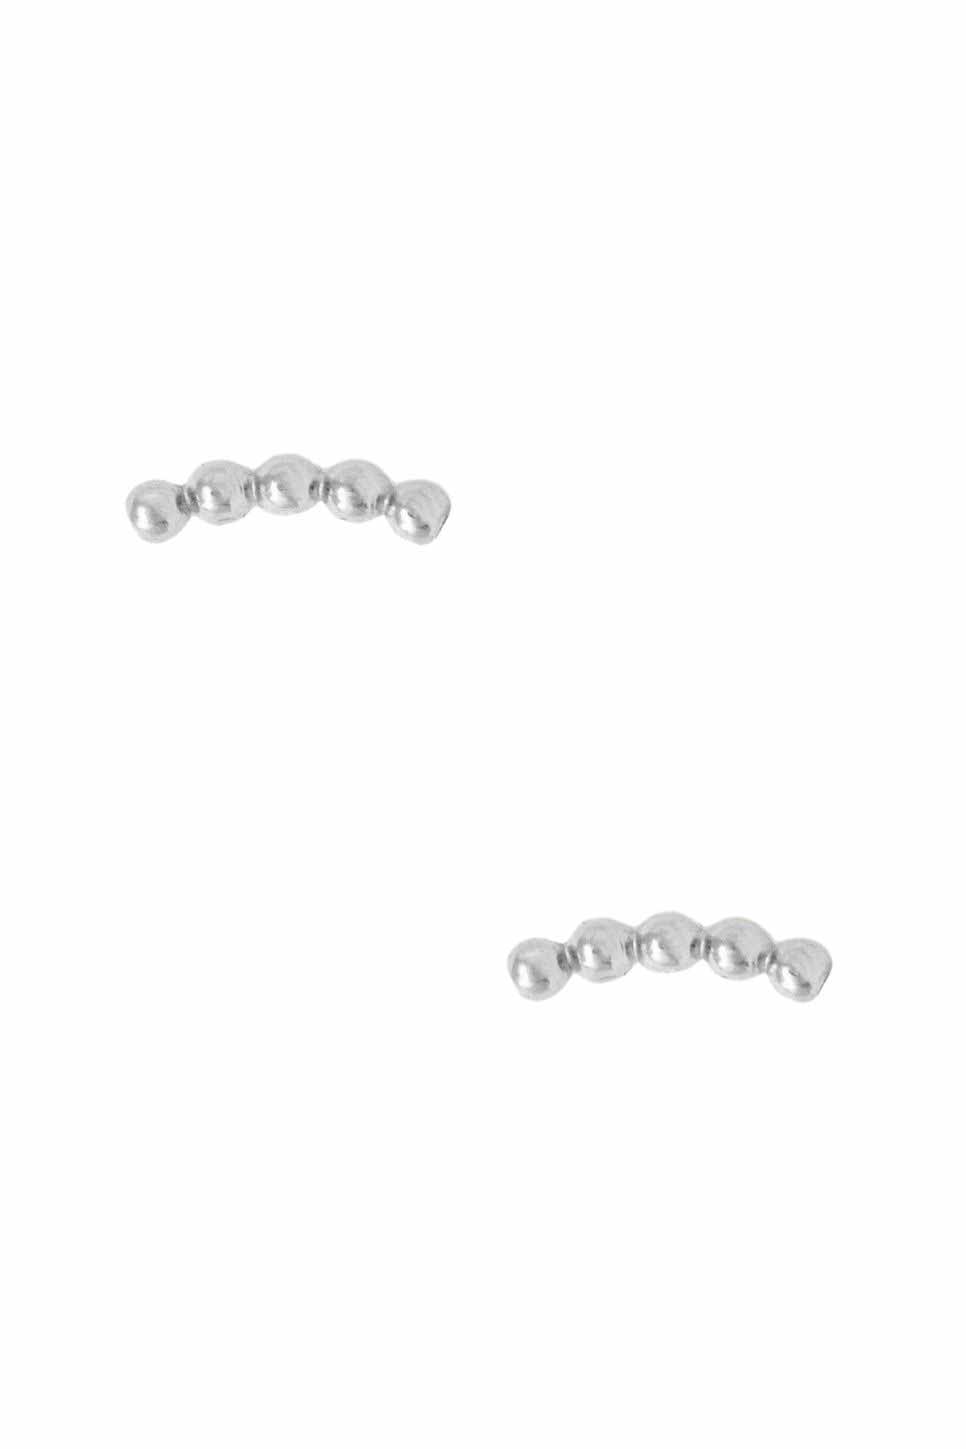 Able - Caesar Stud Earrings - Silver